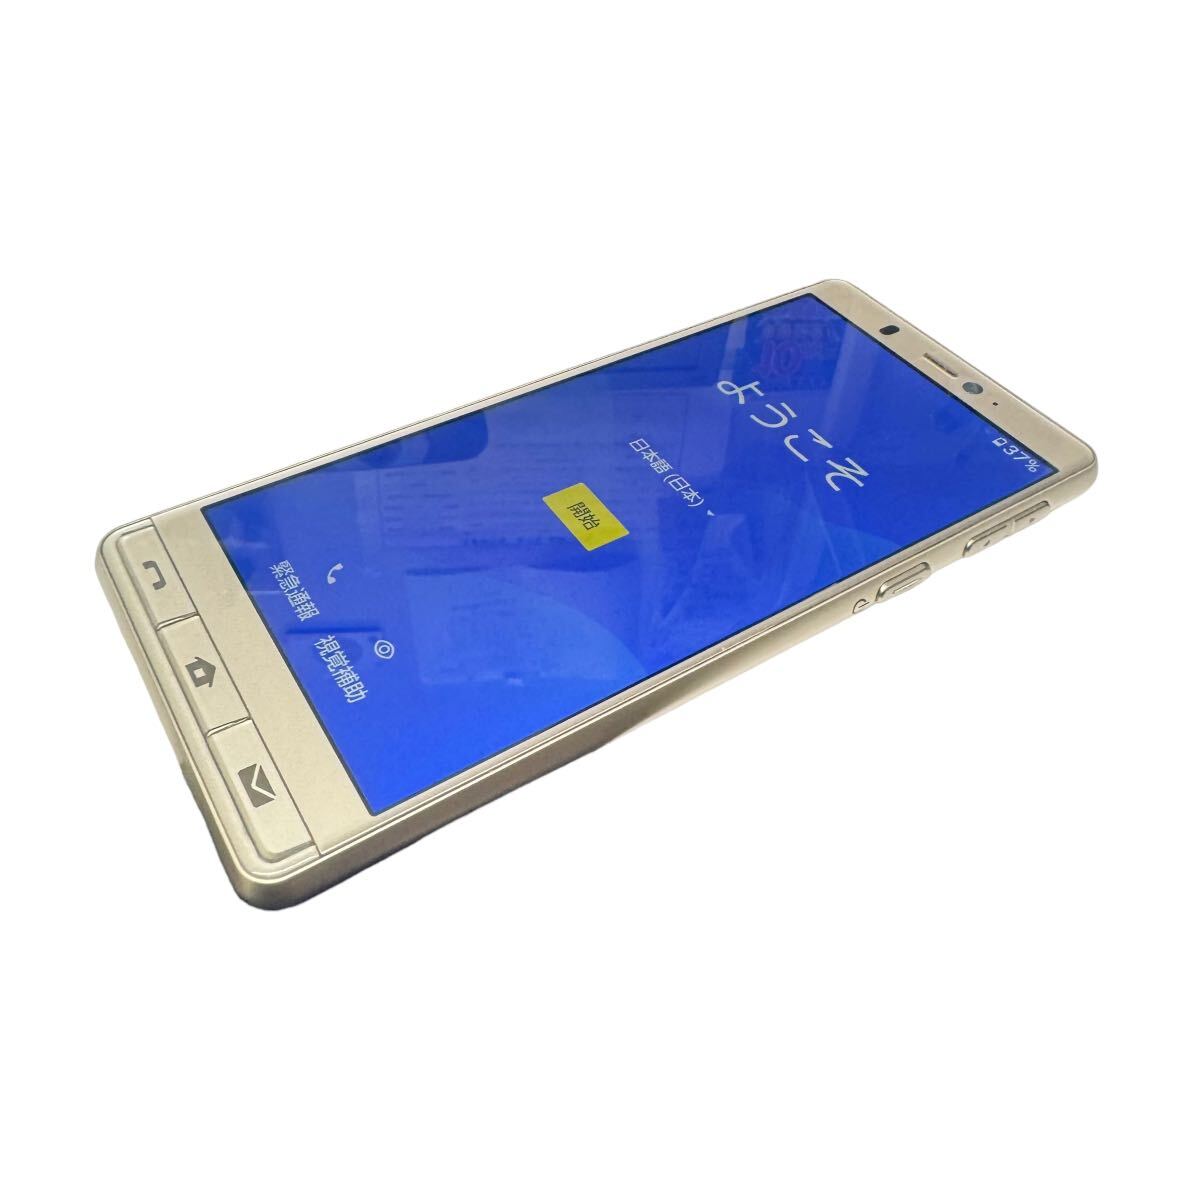 中古美品 softbank SHARP シンプルスマホ5 A001SH Android スマートフォン 残債なし 32GB ゴールド 9950の画像4